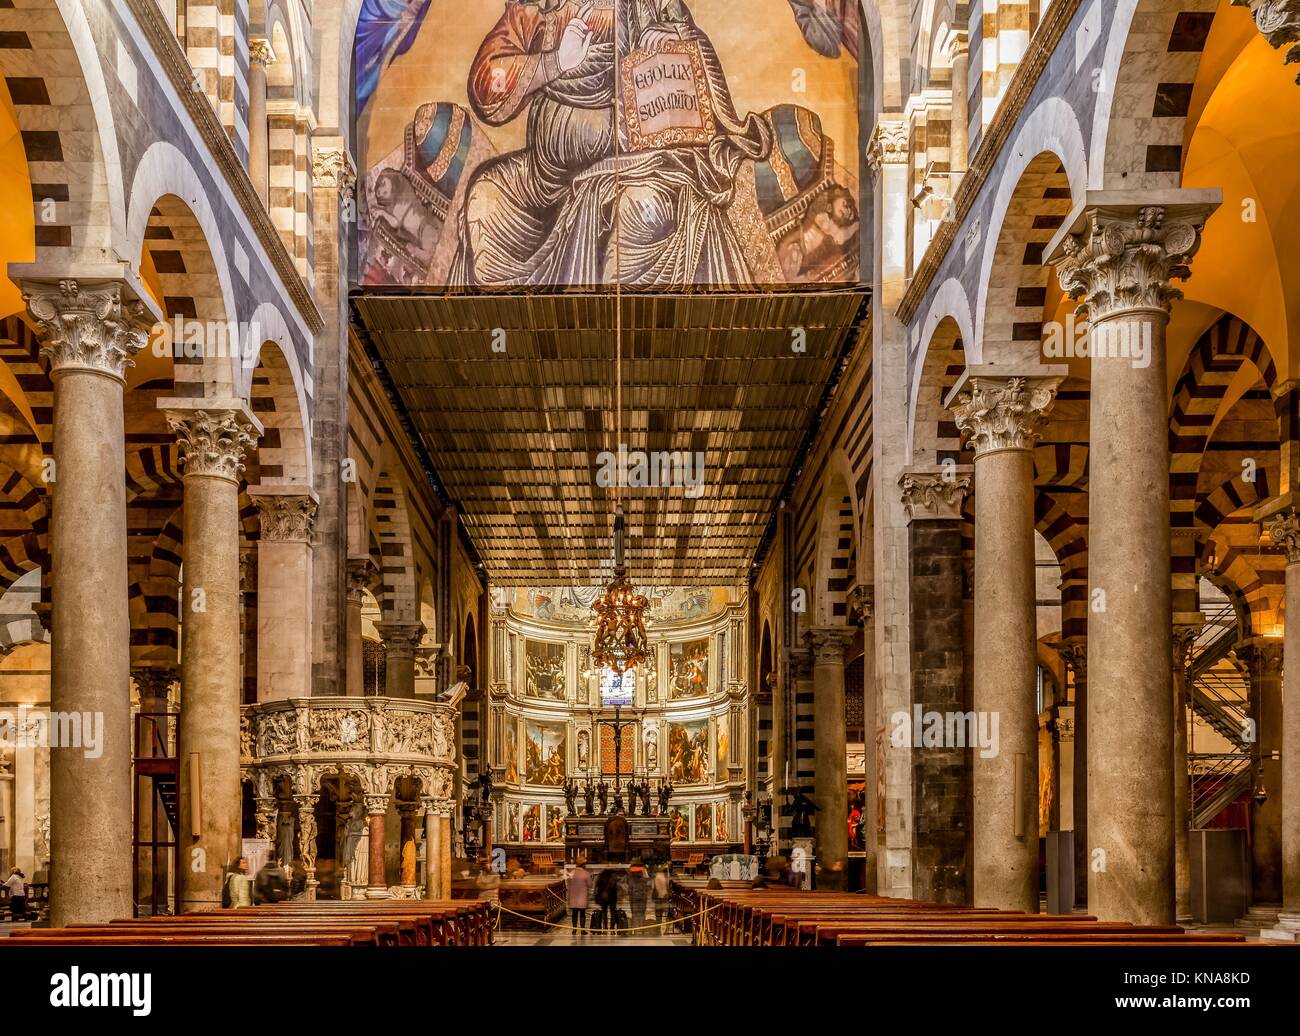 Compartilhar imagens 144+ images interior catedral de pisa - br.thptnvk ...